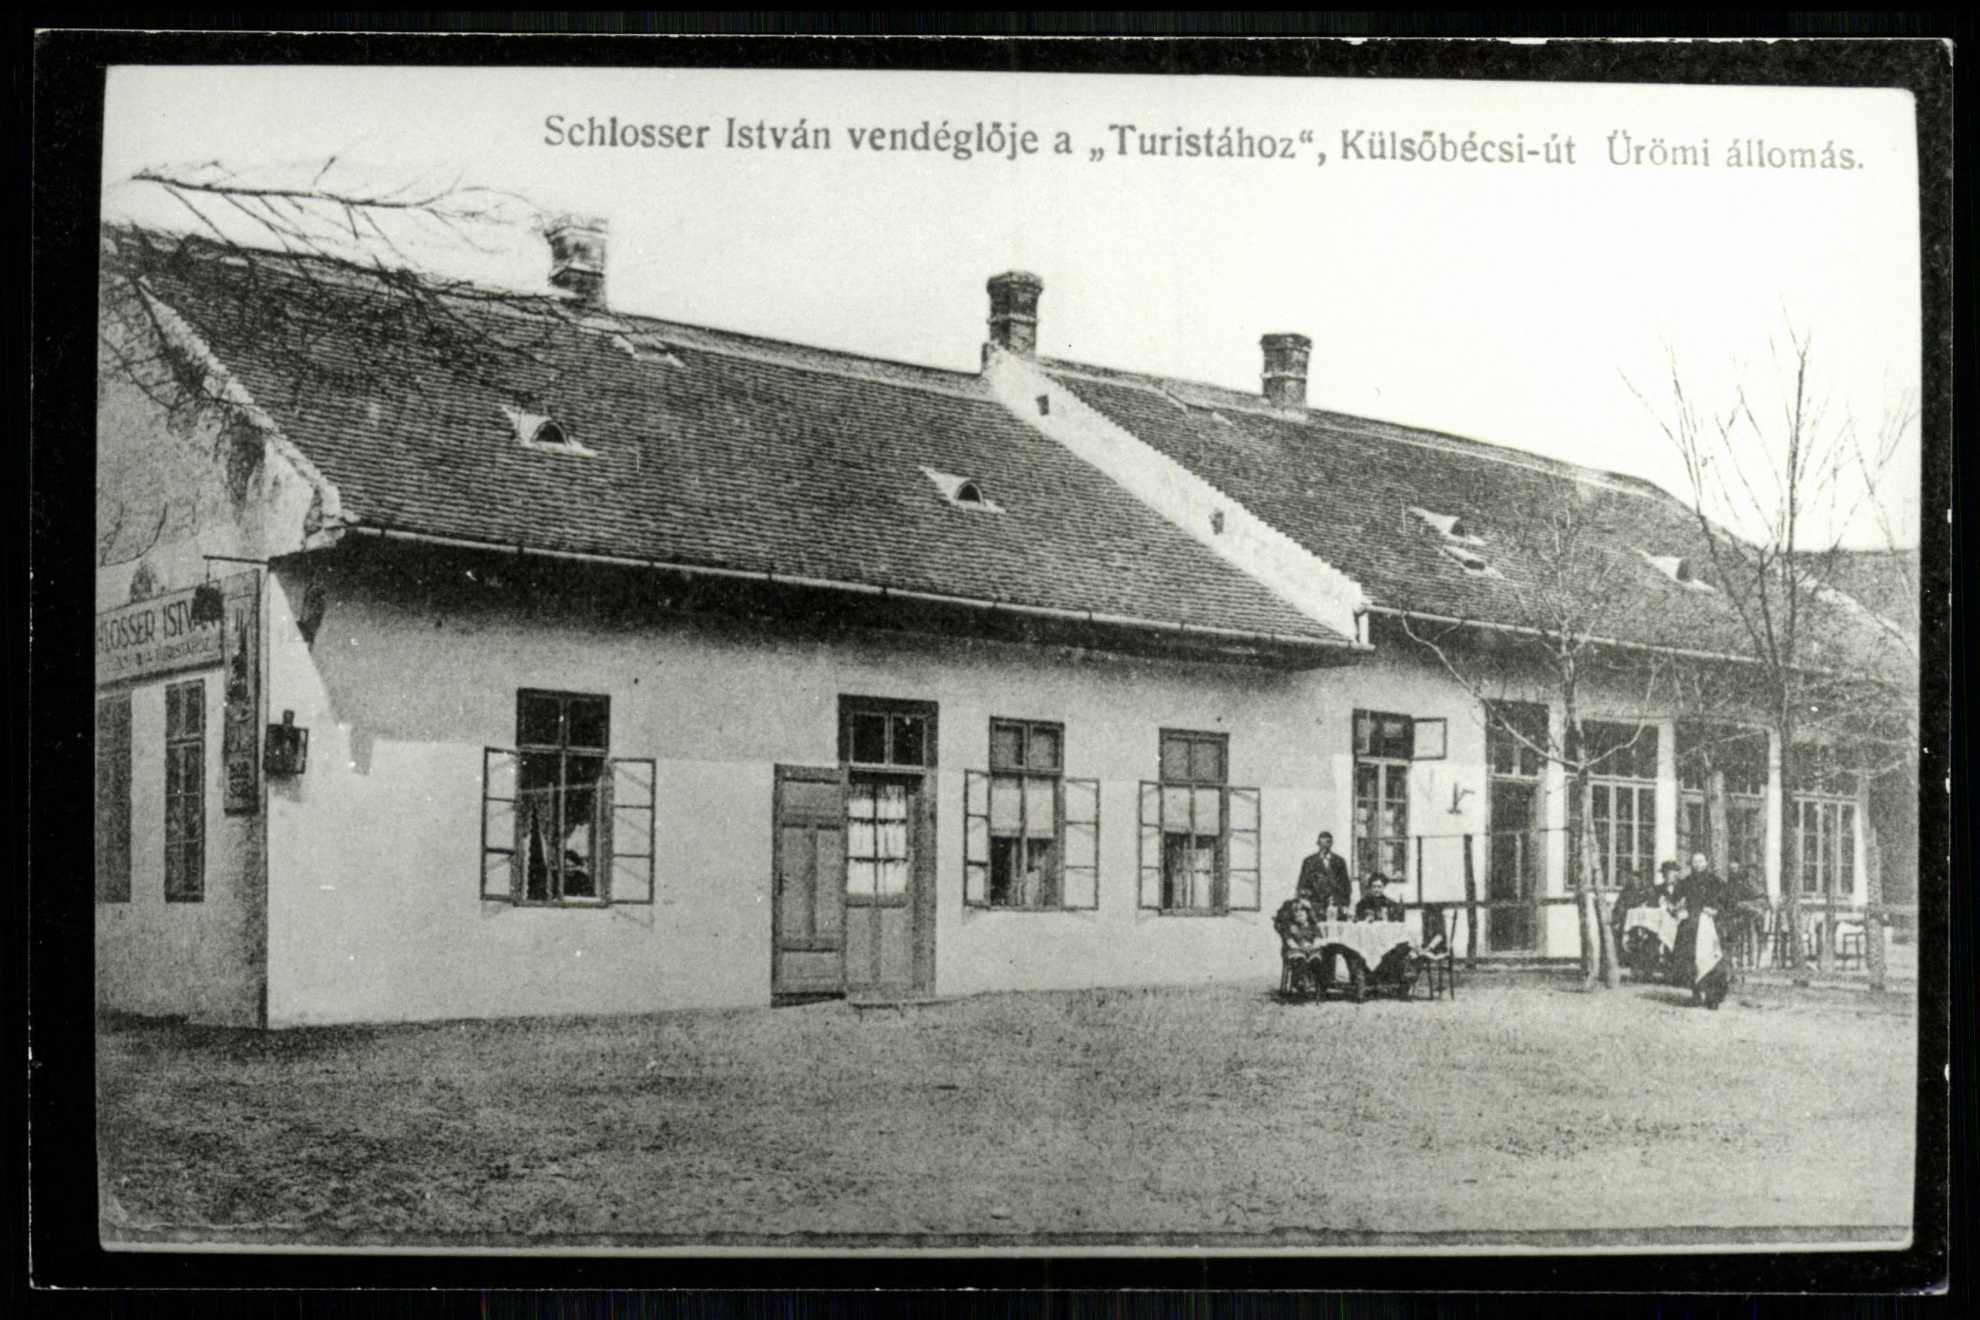 Schlosser István vendéglője a „Turistához”, Külső-Bécsi út, Ürömi állomás (Magyar Kereskedelmi és Vendéglátóipari Múzeum CC BY-NC-ND)